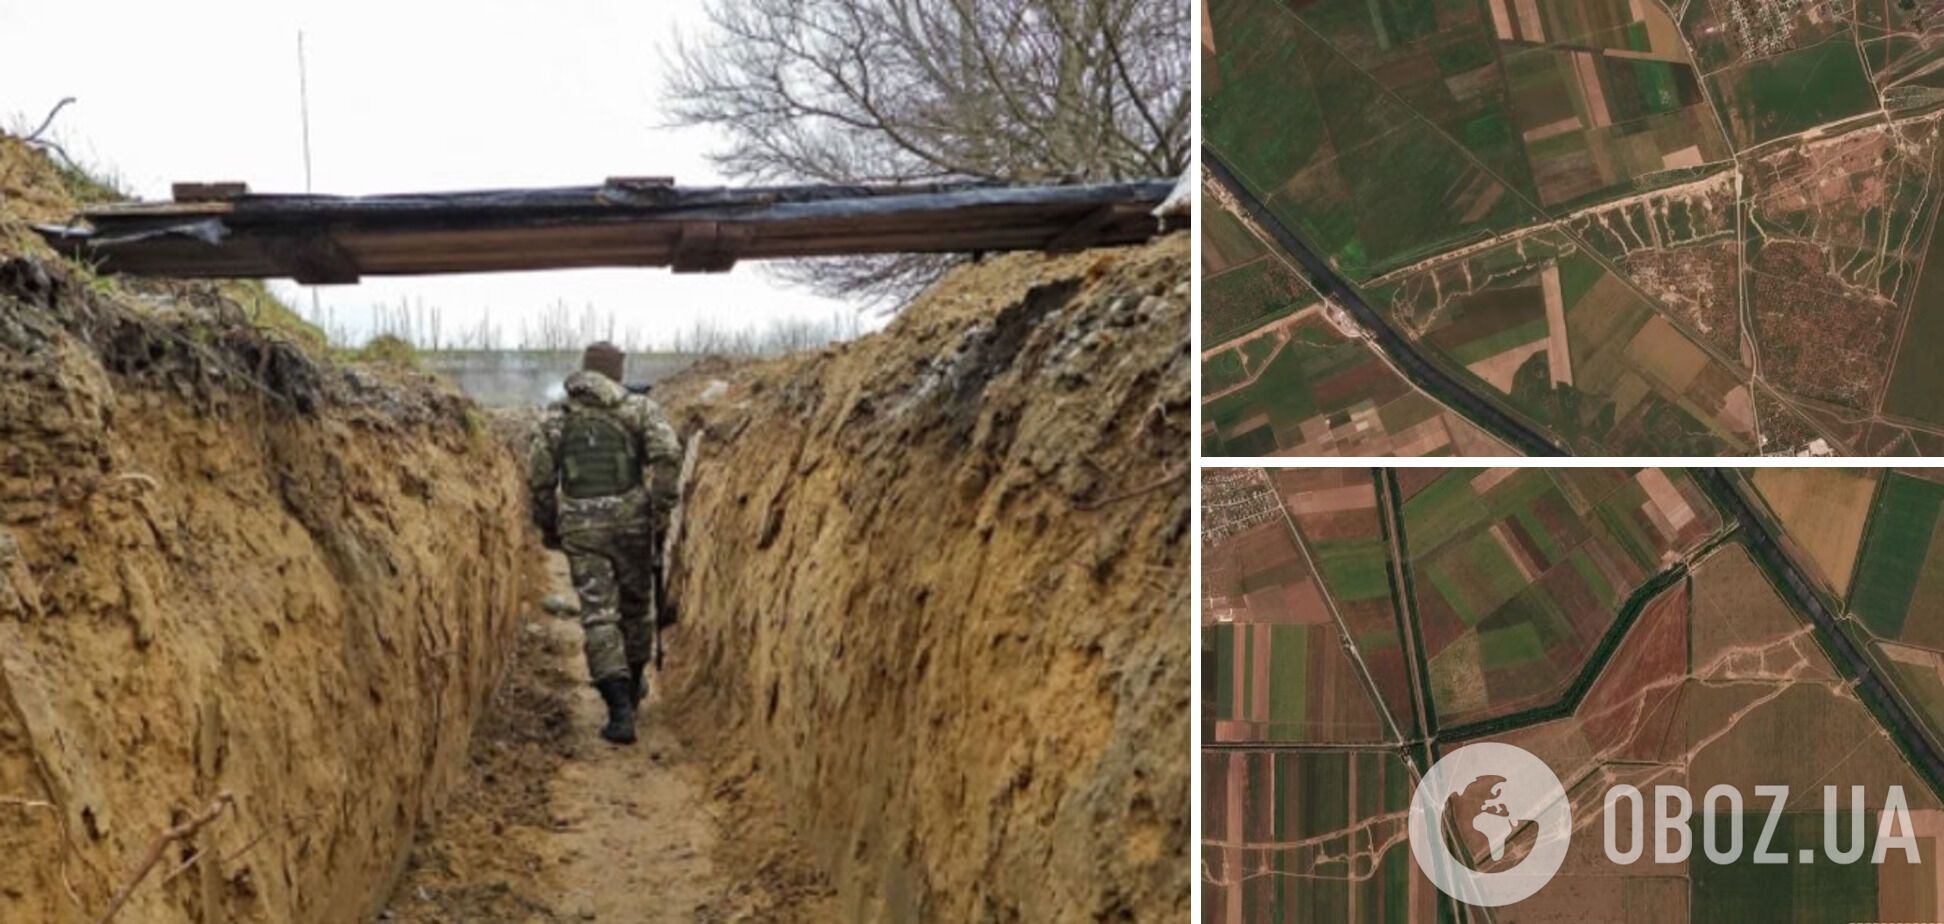 Возводят фортификации даже в населенных пунктах: как оккупанты готовятся к обороне в Крыму. Спутниковые фото